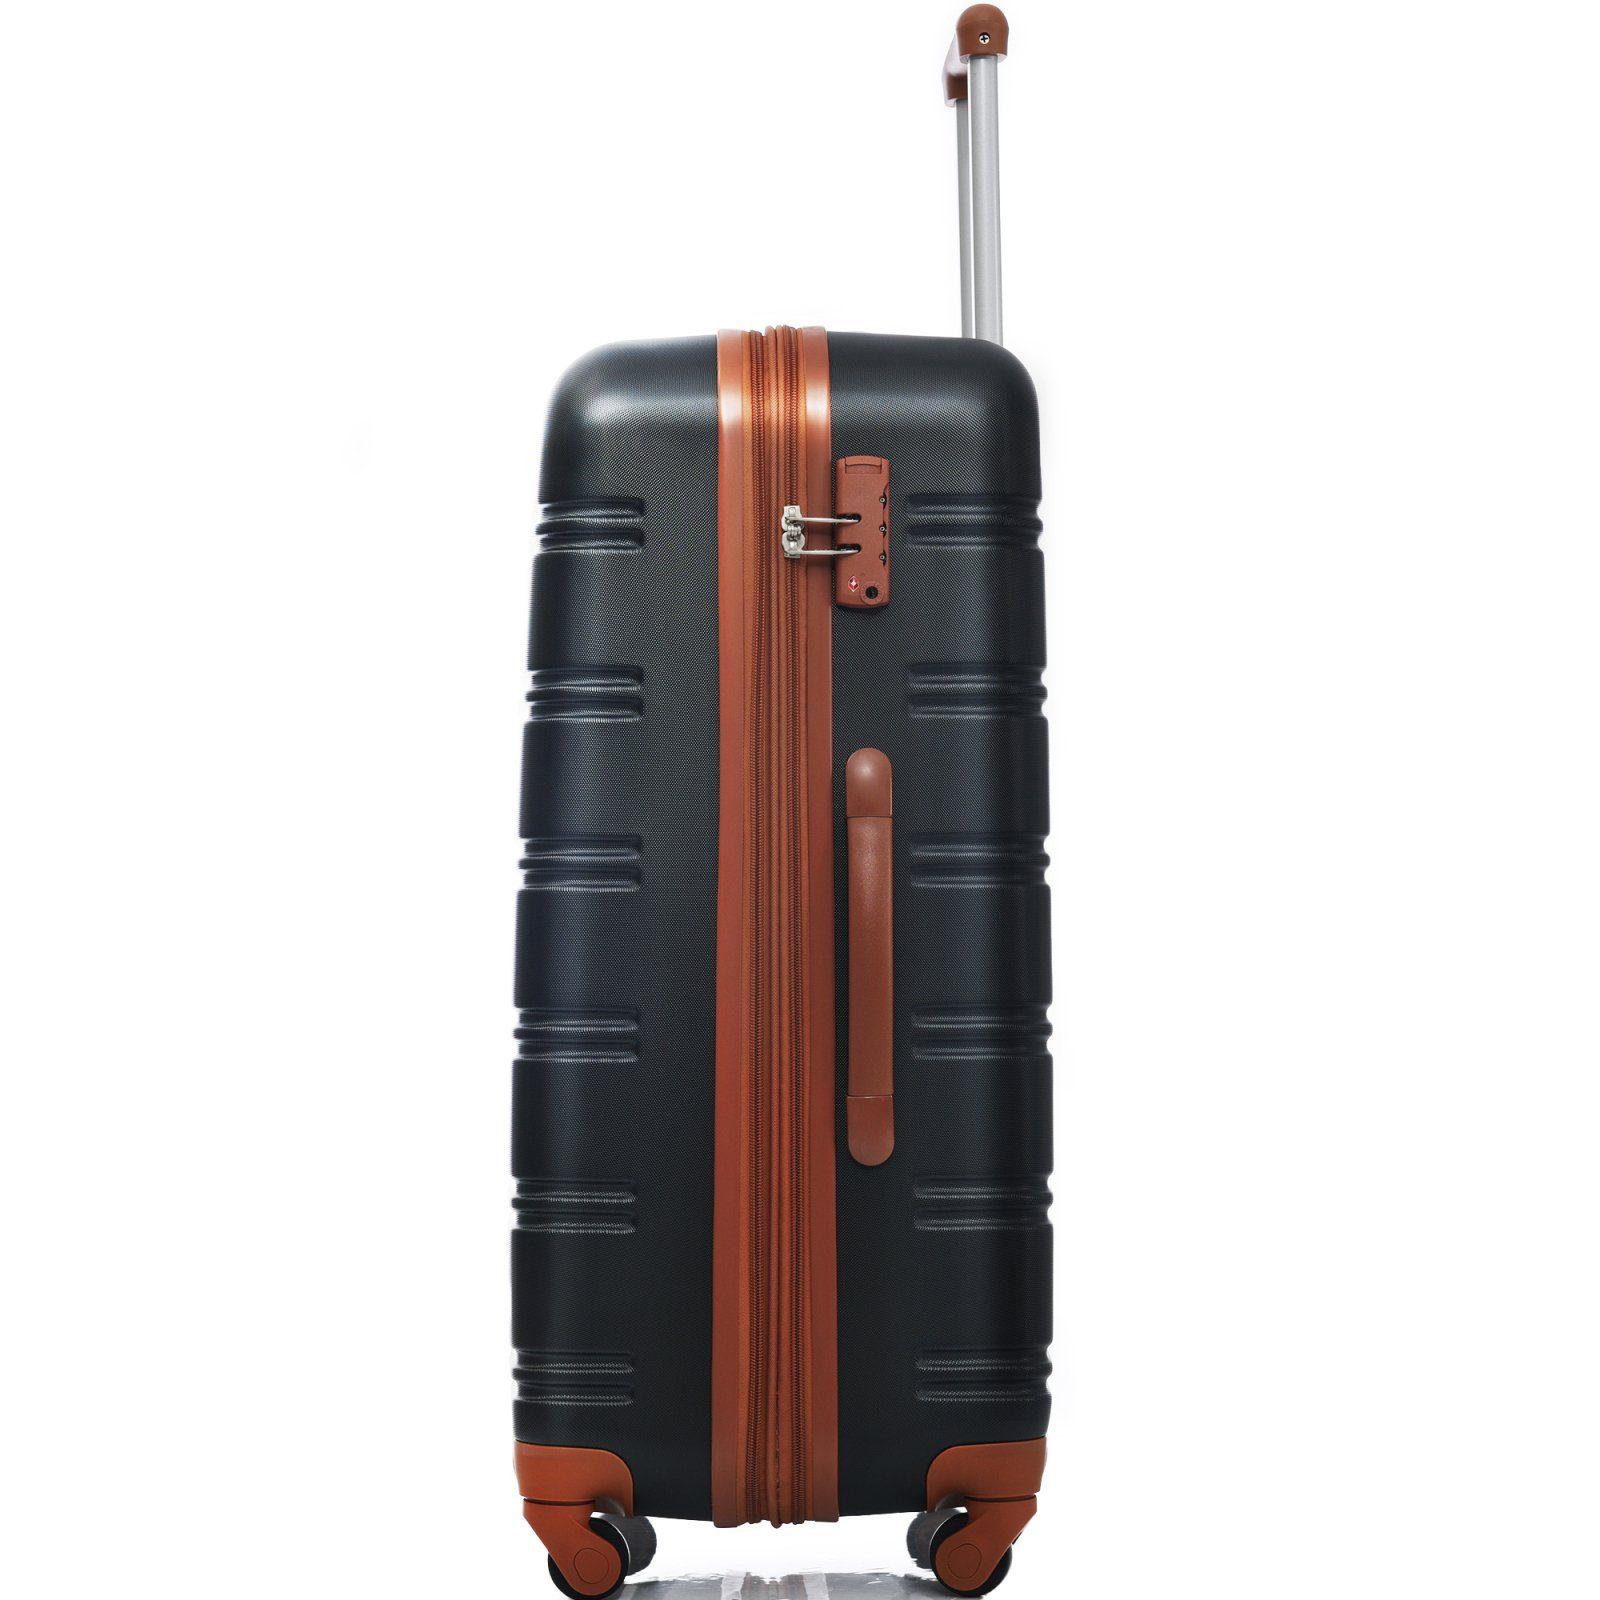 SEEZSSA Koffer Rollkoffer Rolle 4 Handgepäck schwarz+braun , aus Rollkoffer mit ABS-Material, 65x44.5x27.5cm